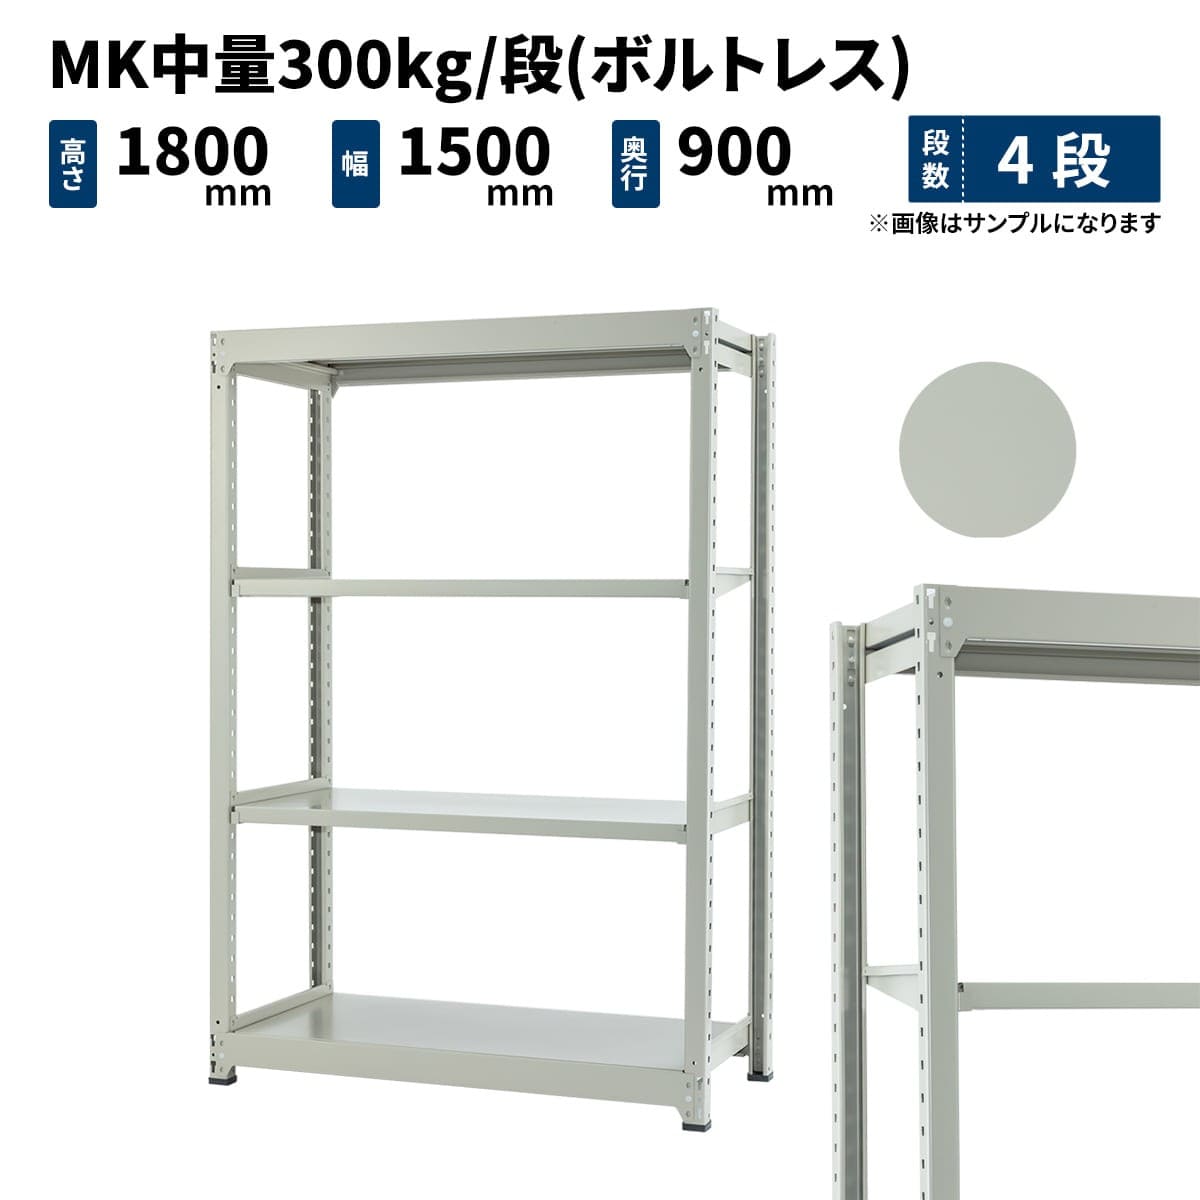 MK中量 300kg/段 (ボルトレス) 高さ1800×幅1500×奥行900mm 単体の商品